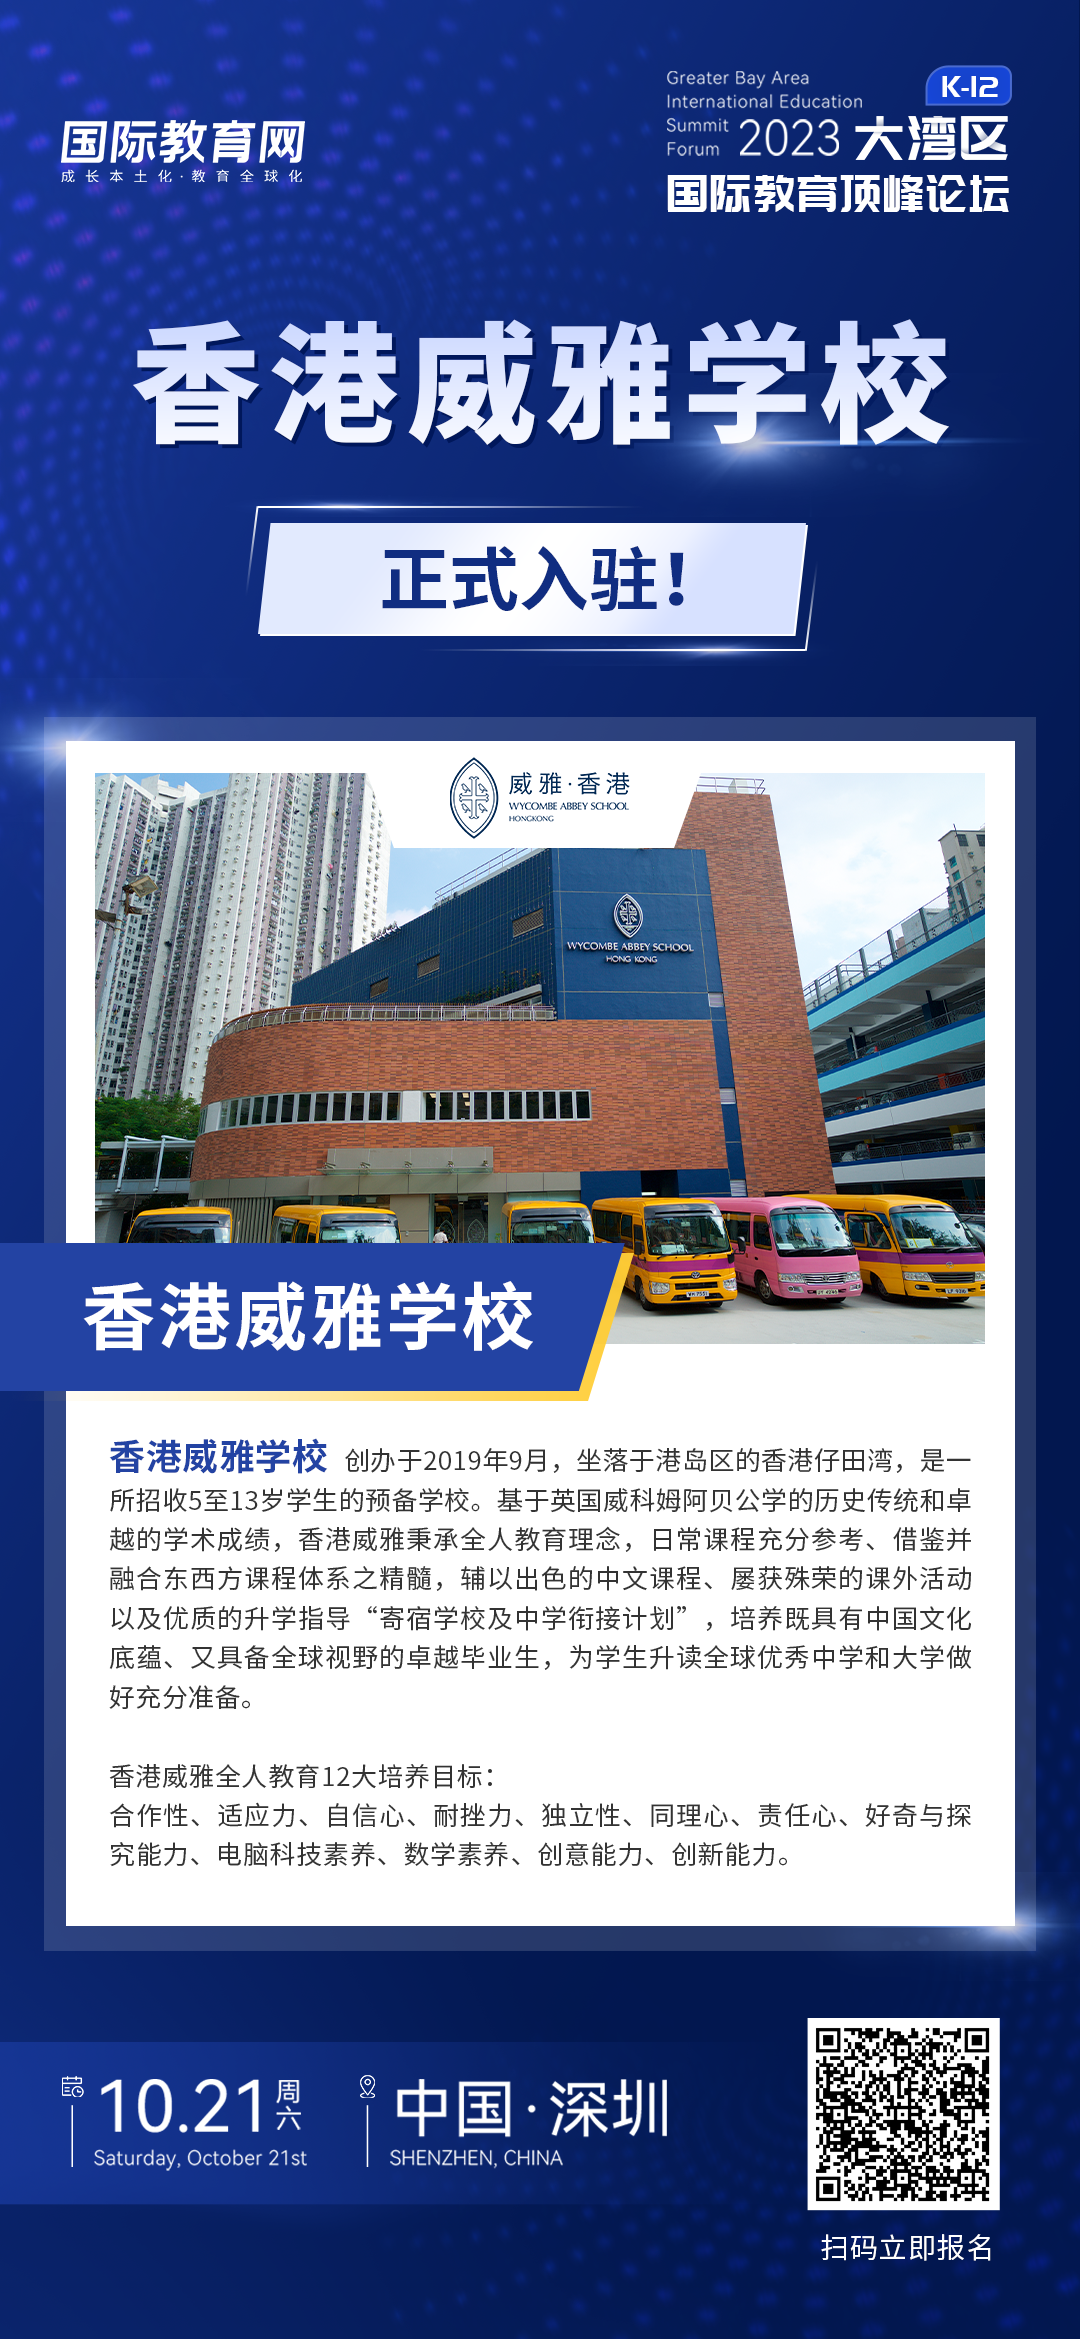 香港威雅学校 | 正式入驻2023大湾区国际教育顶峰论坛